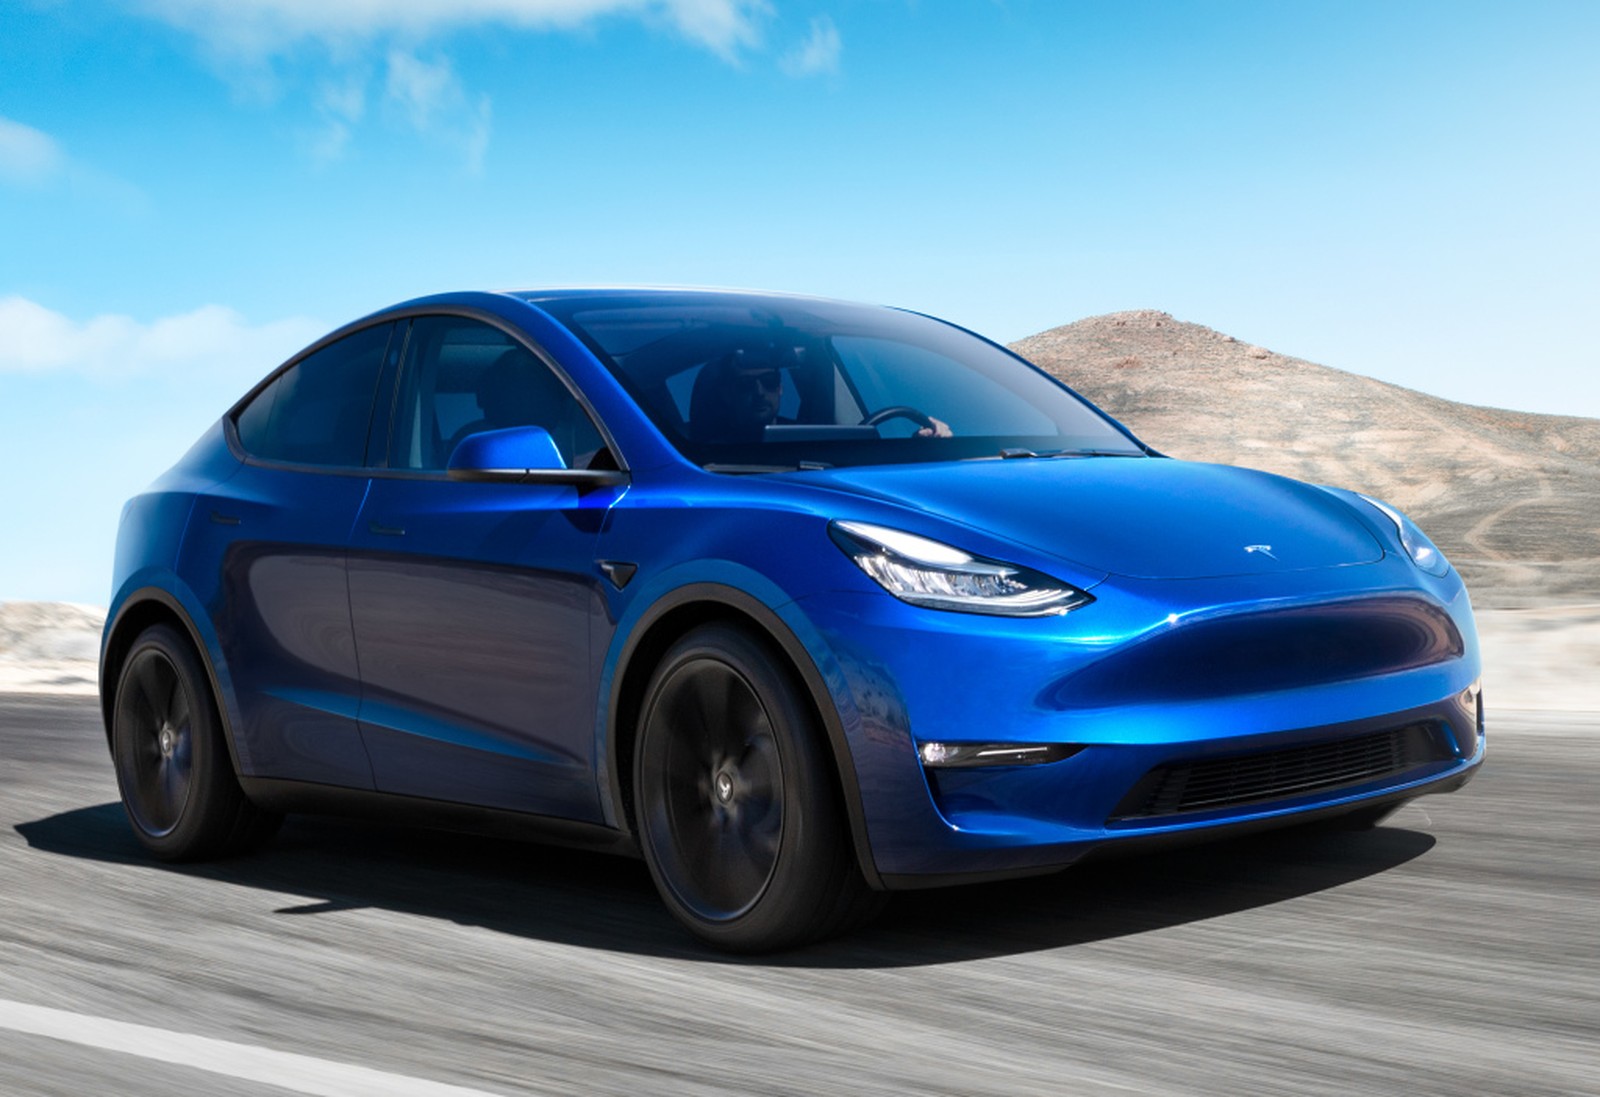 O primeiro SUV elétrico da Tesla foi apresentado. Model Y entrega até 450 km de autonomia, chega em 2020 e oferece quatro versões aos consumidores.